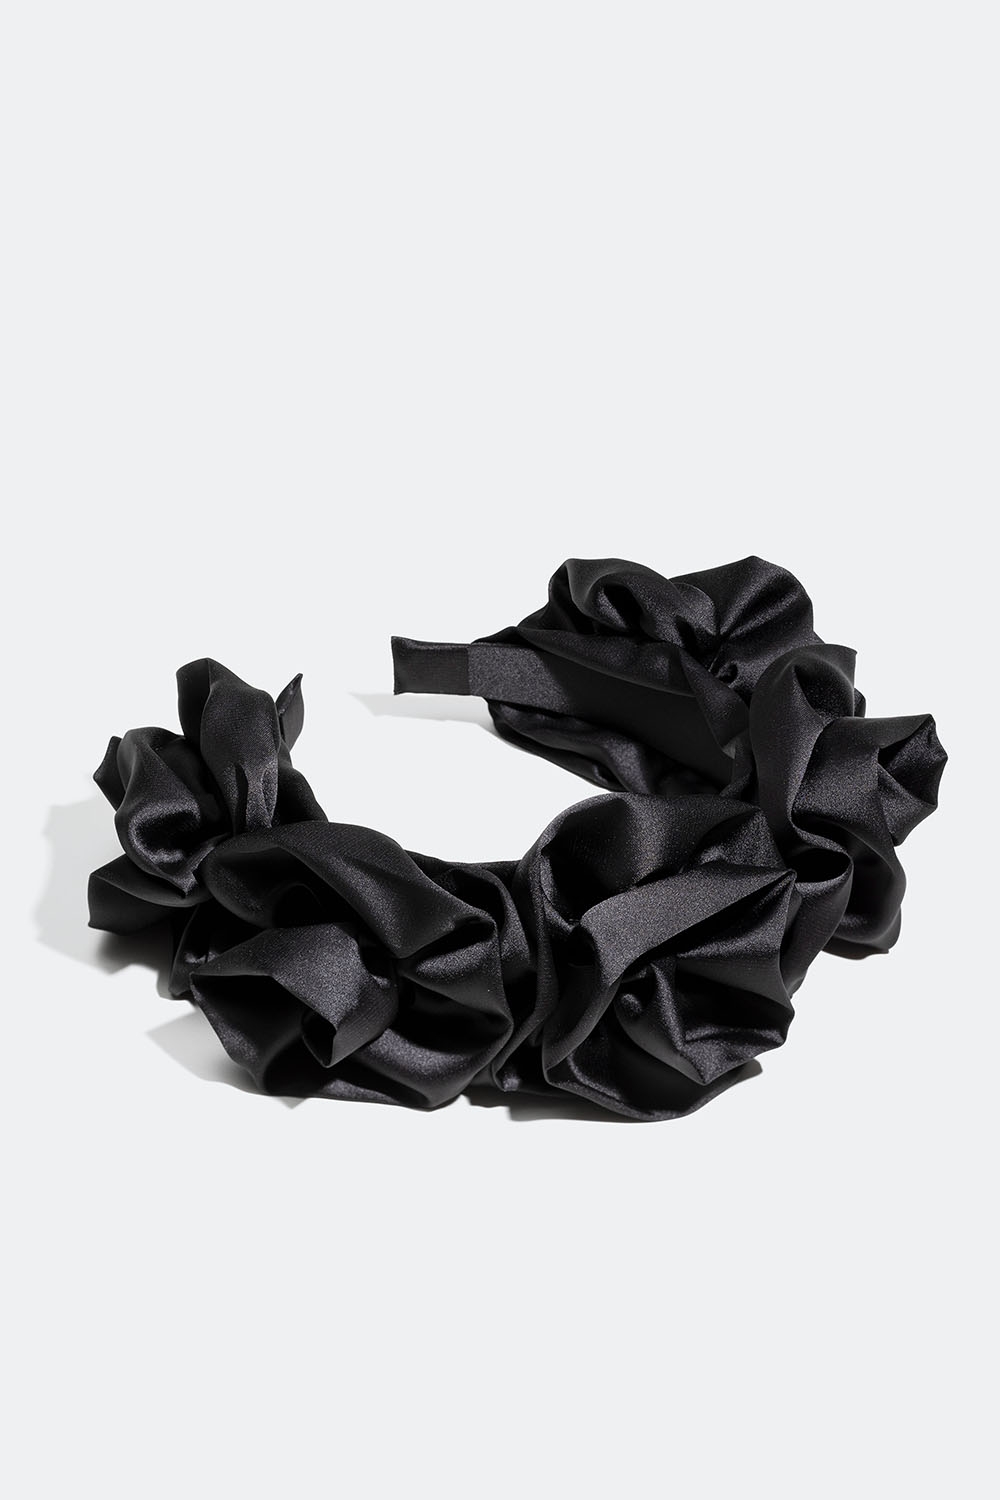 Musta hiuspanta silkkijäljitelmää ja jossa kukkia ryhmässä Hiustuotteet / Hiuspannat / Leveät @ Glitter (336000669000)